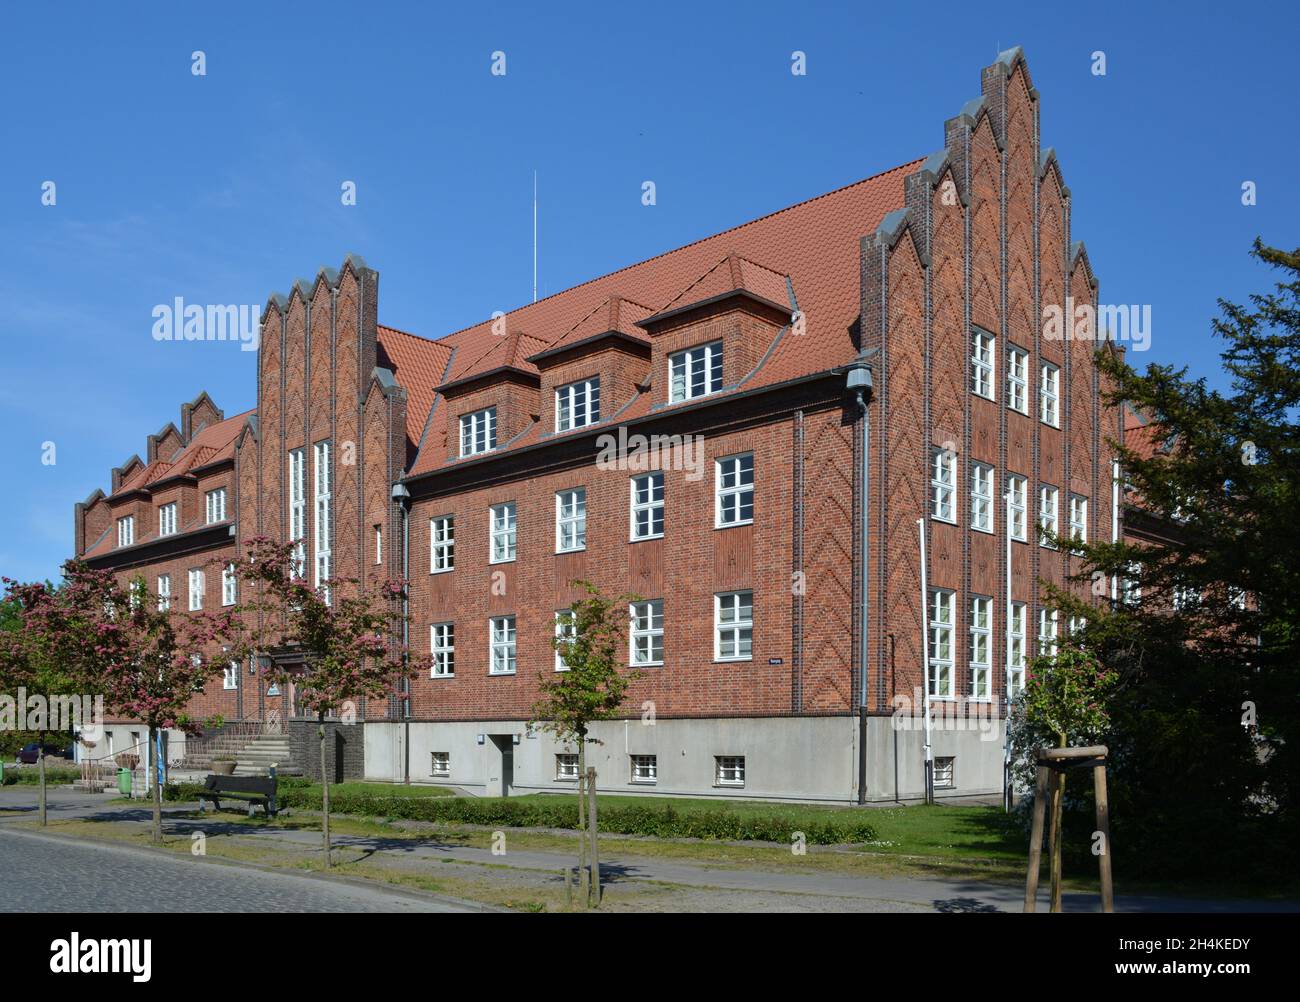 Rathaus Barth - Sitz der Stadtverwaltung und offizieller Sitz des Barth-Amtes, Fischland-Darß-Zingst - Boddenlandschaft, Ostsee, Mecklen Stockfoto